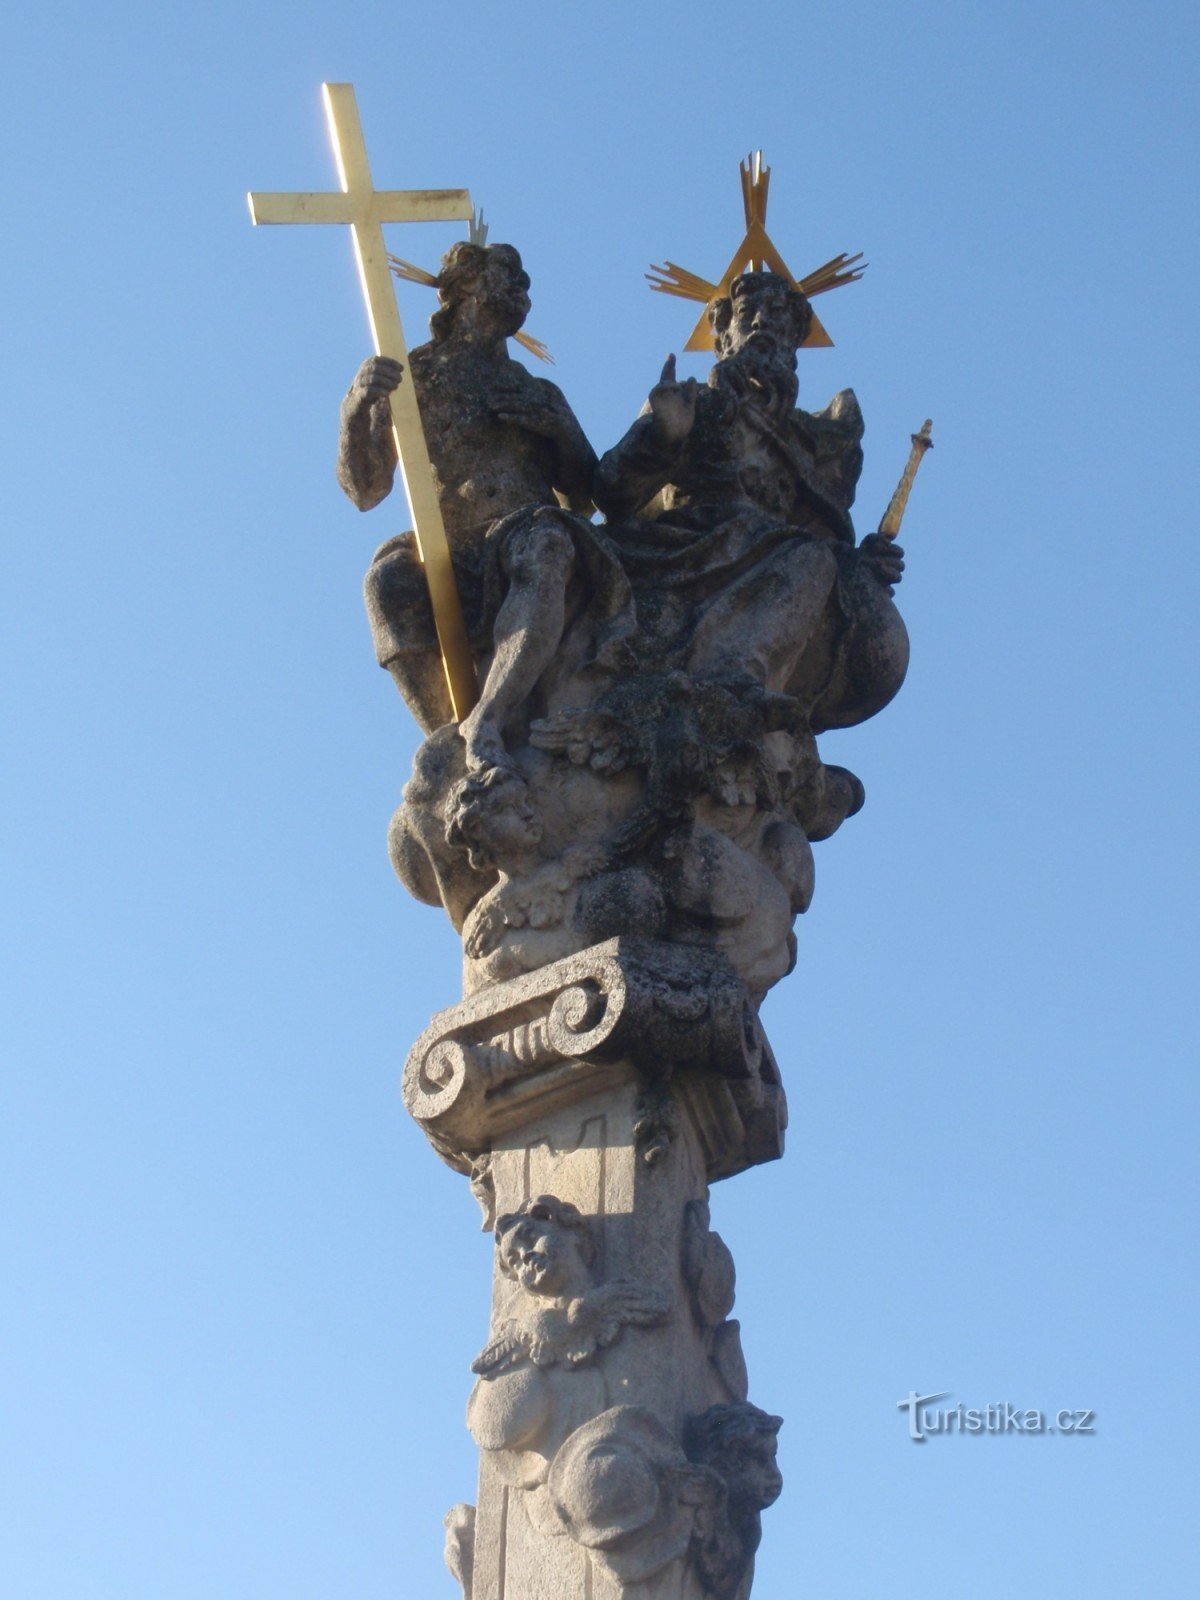 Pyhän kolminaisuuden patsas Troubskissa